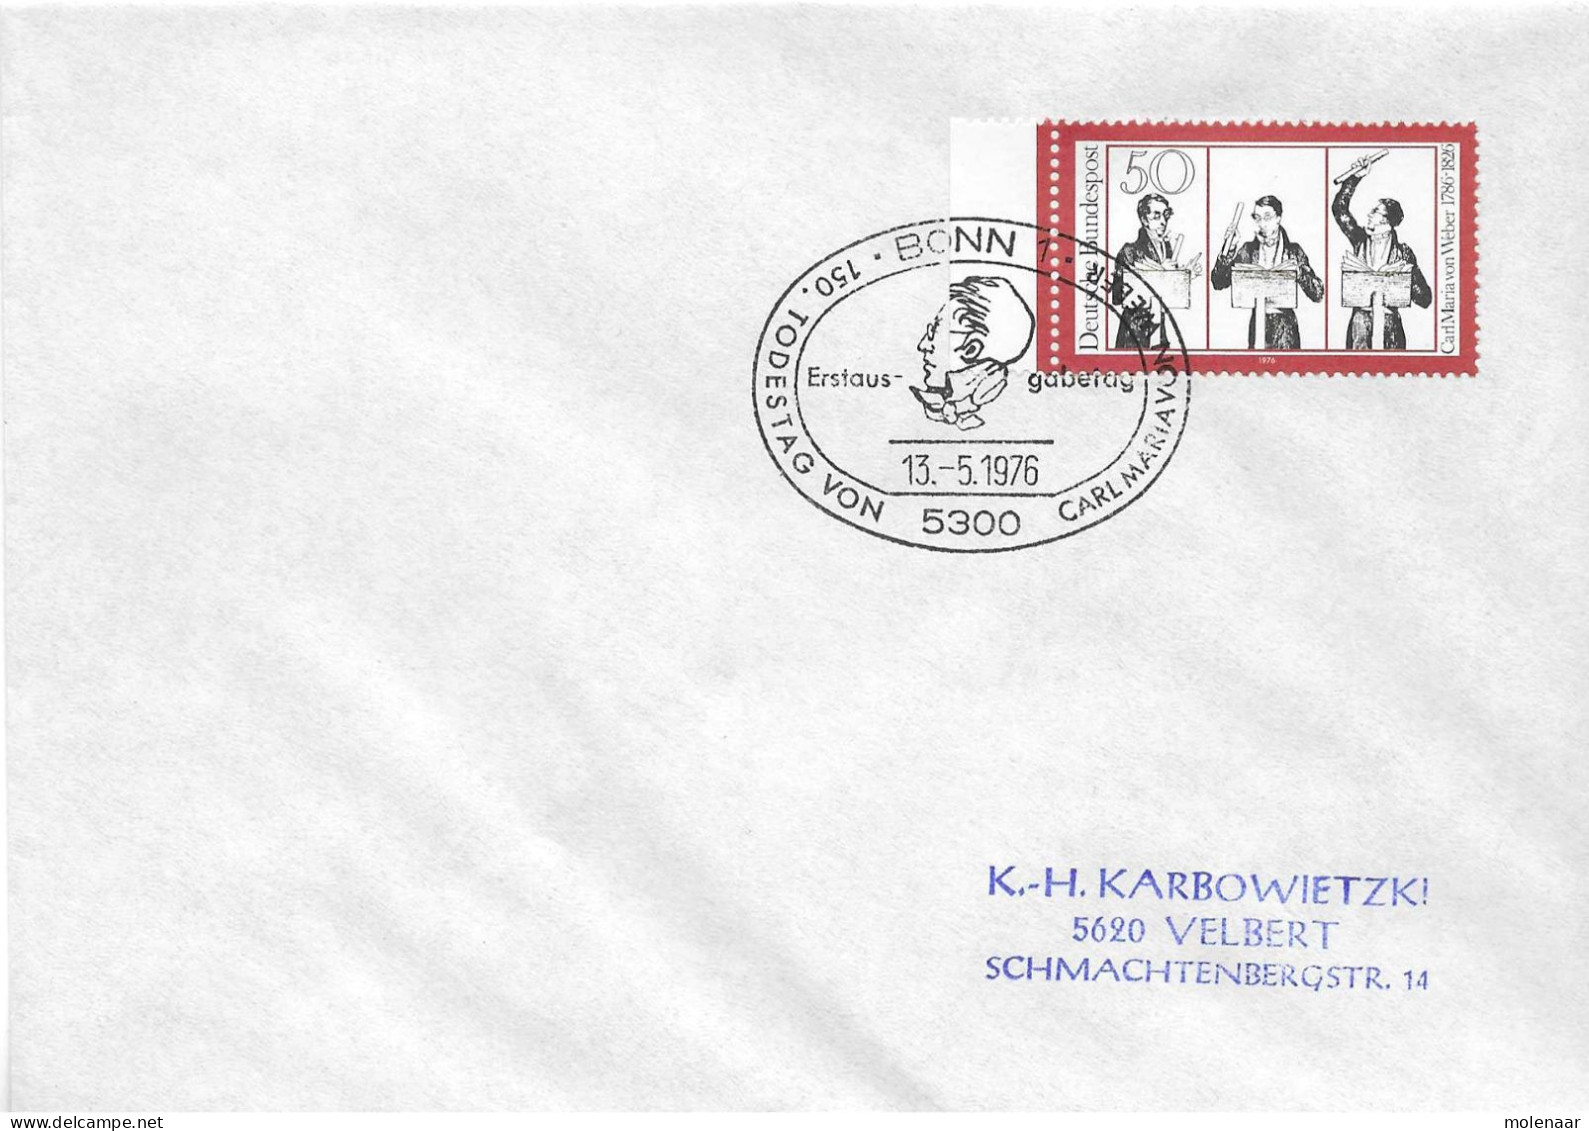 Postzegels > Europa > Duitsland > West-Duitsland > 1970-1979 > Brief Met No. 894  (17354) - Lettres & Documents